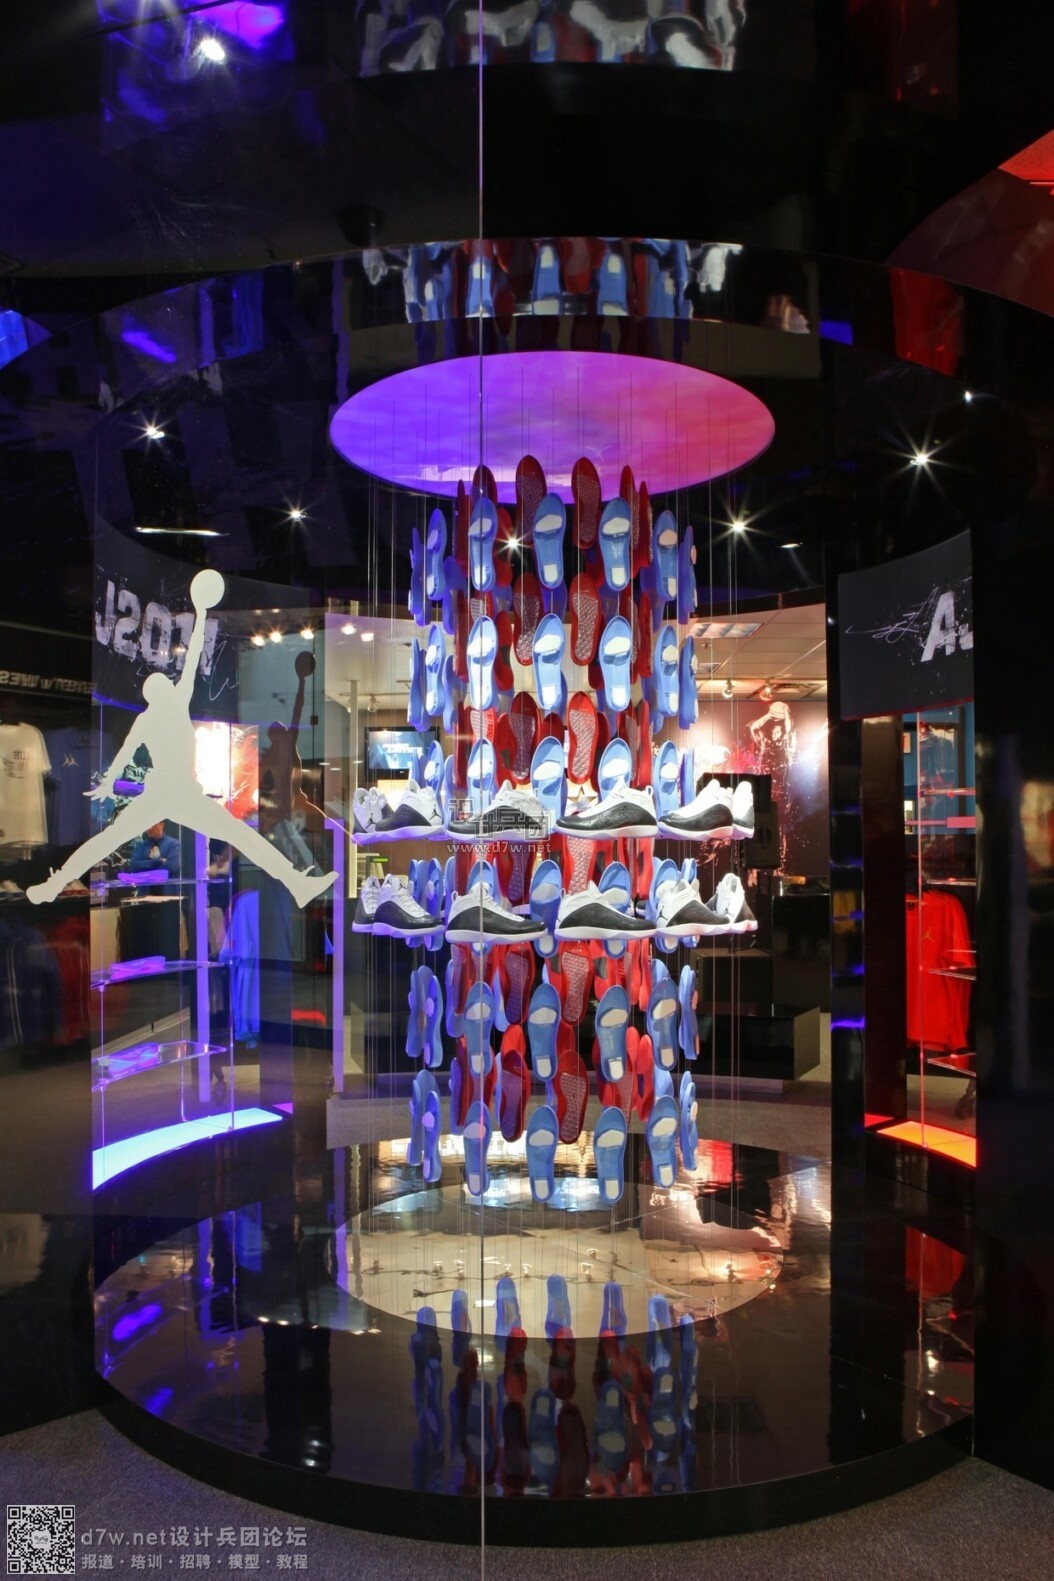 Nike 全新购物体验的耐克上海 001 昨日开幕 – NOWRE现客